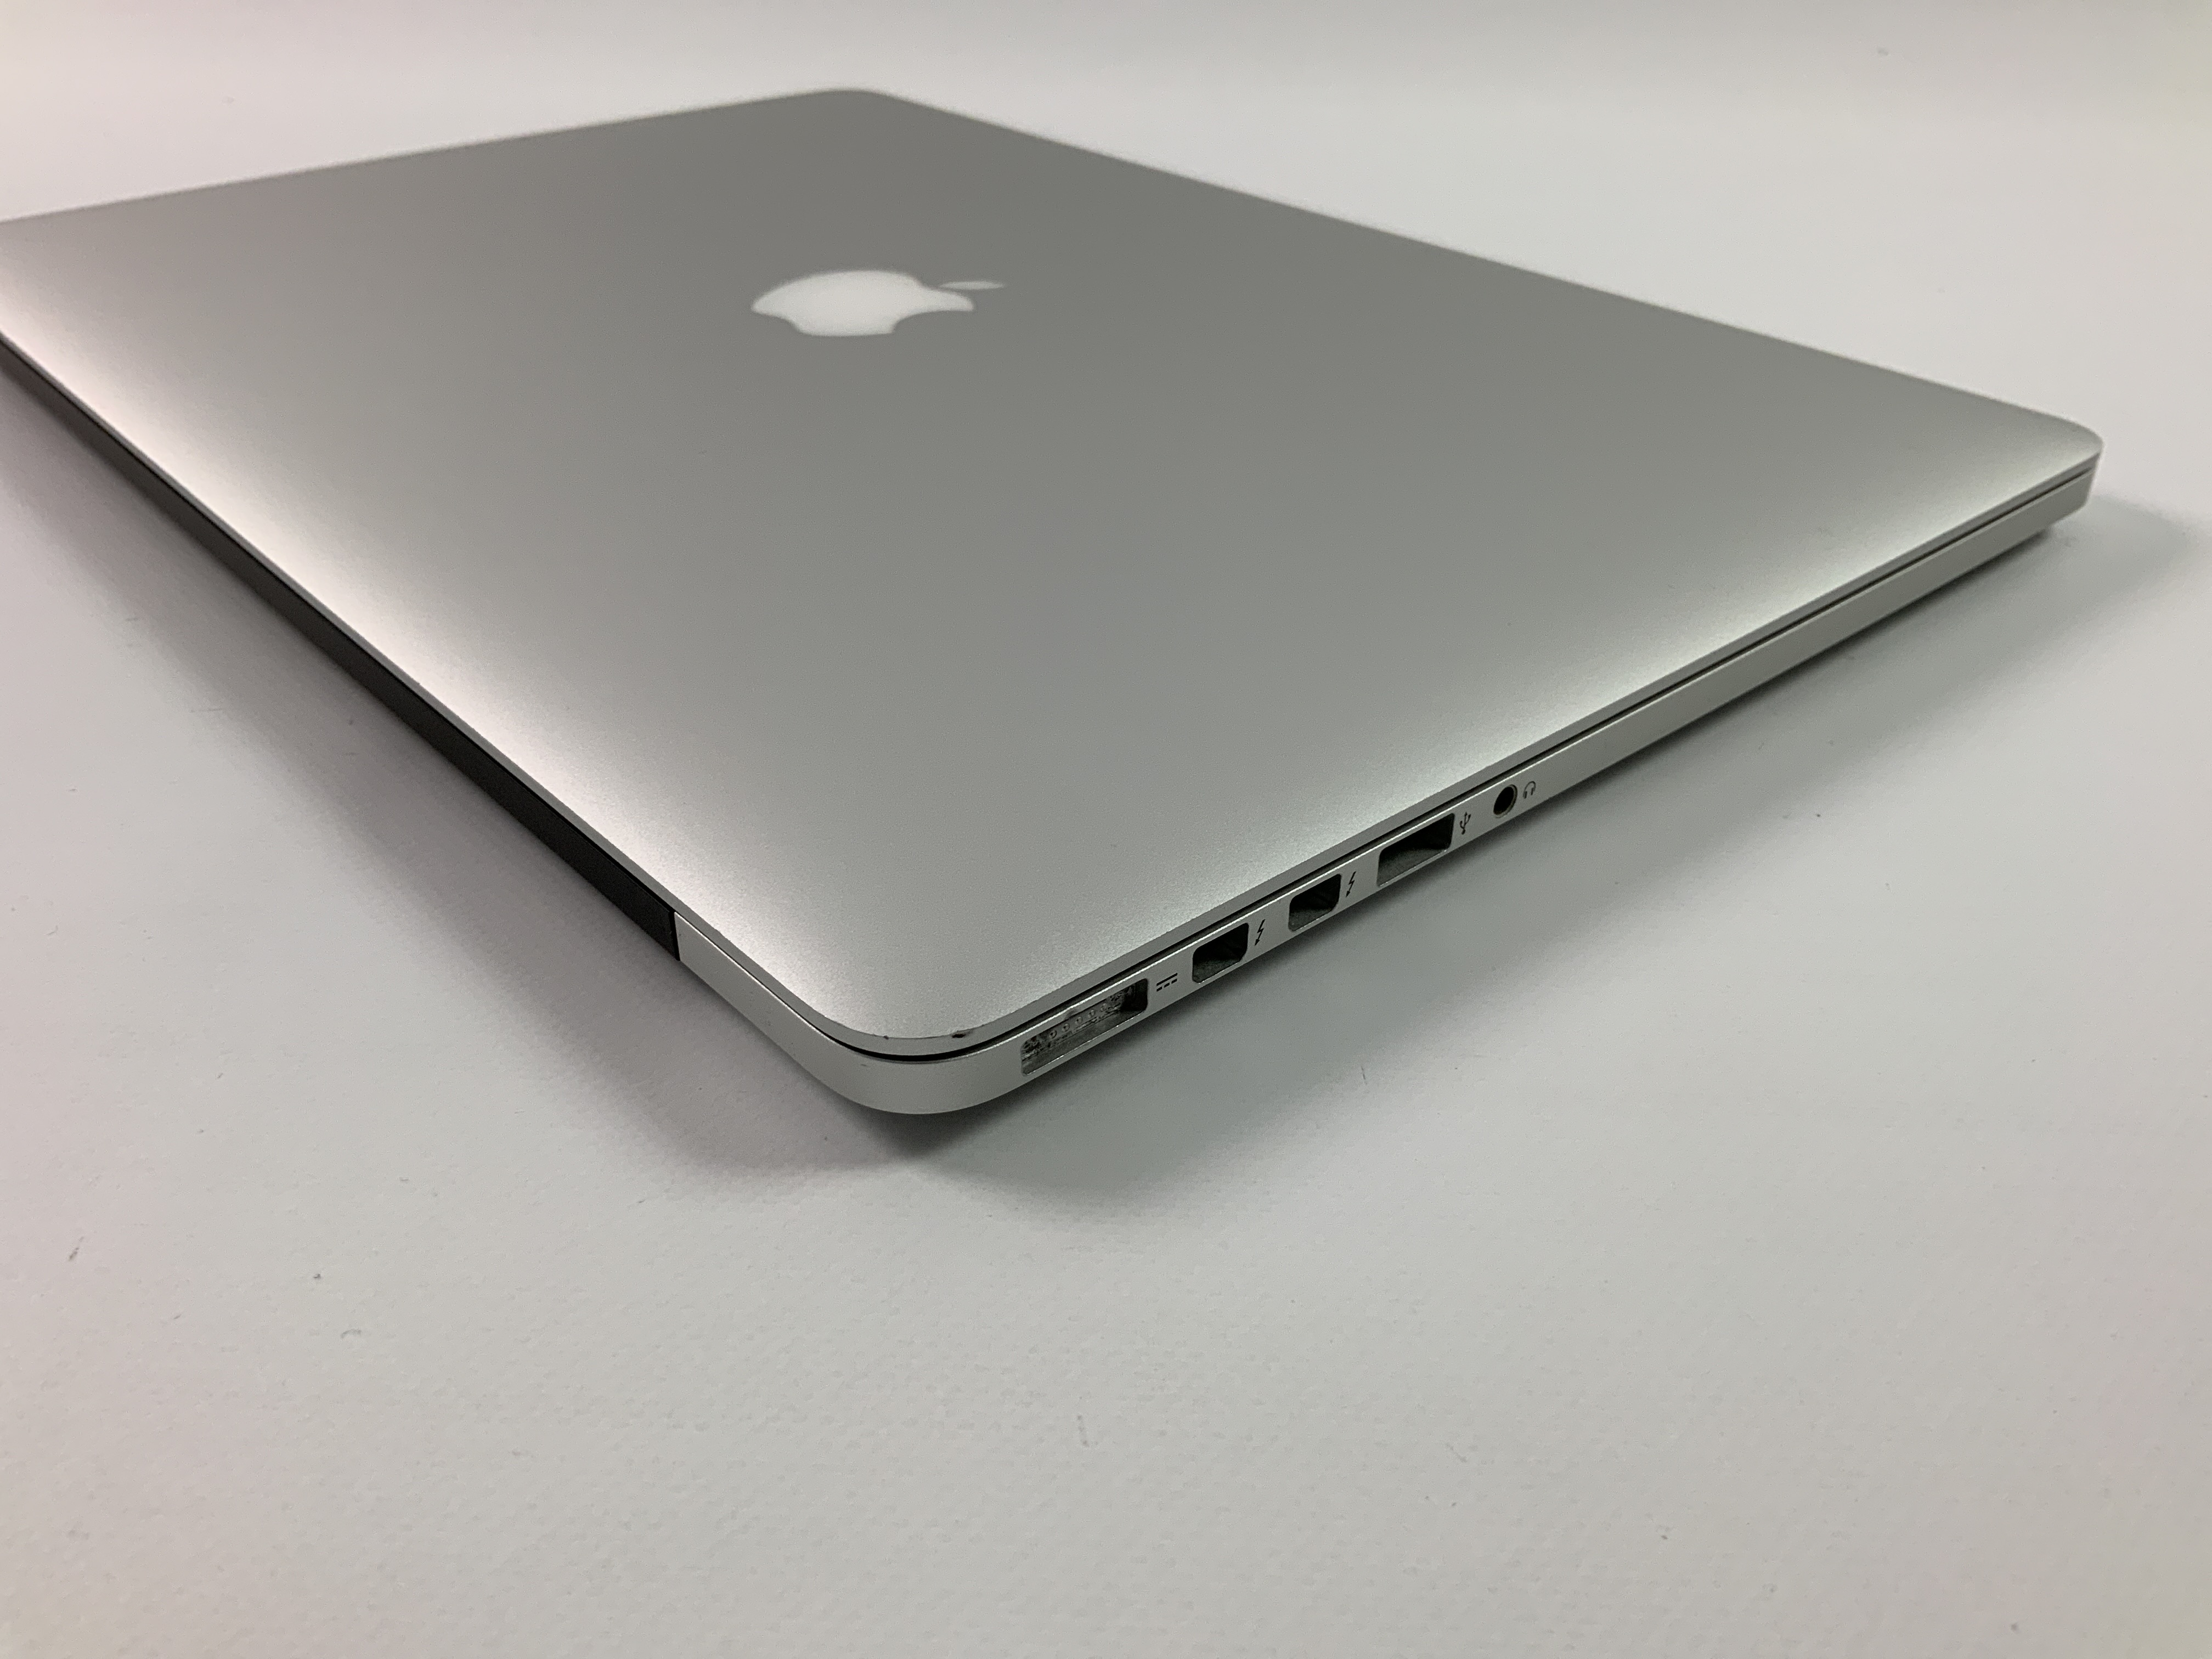 MacBook Pro Retina 15" Mid 2015 (Intel Quad-Core i7 2.2 GHz 16 GB RAM 256 GB SSD), Intel Quad-Core i7 2.2 GHz, 16 GB RAM, 256 GB SSD, immagine 3